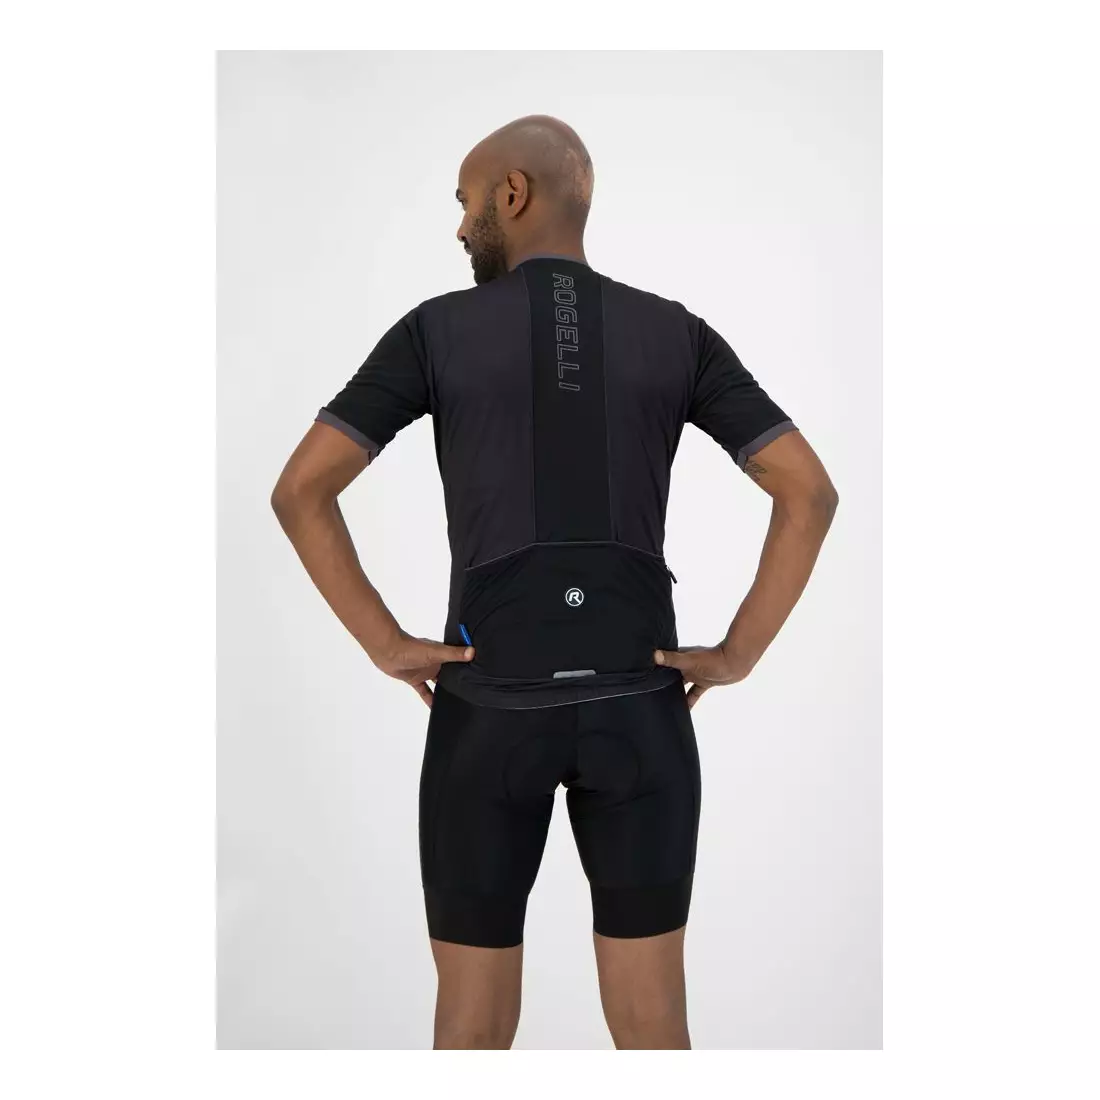 ROGELLI ESSENTIAL tricou de ciclism masculin, negru